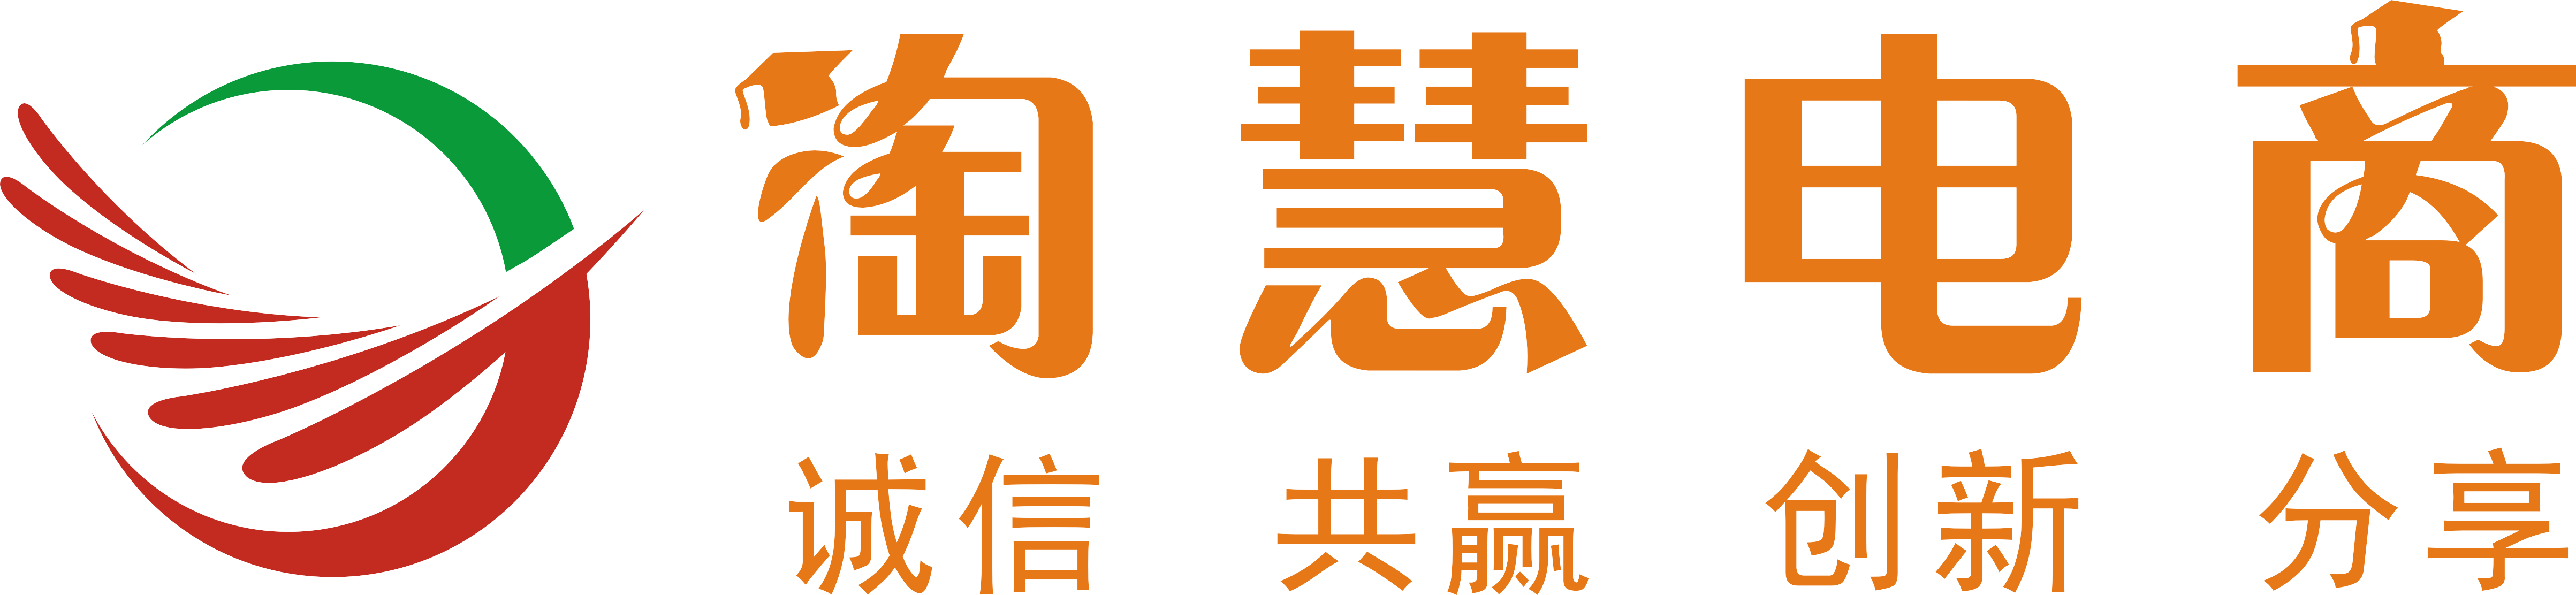 广州淘慧电商学院